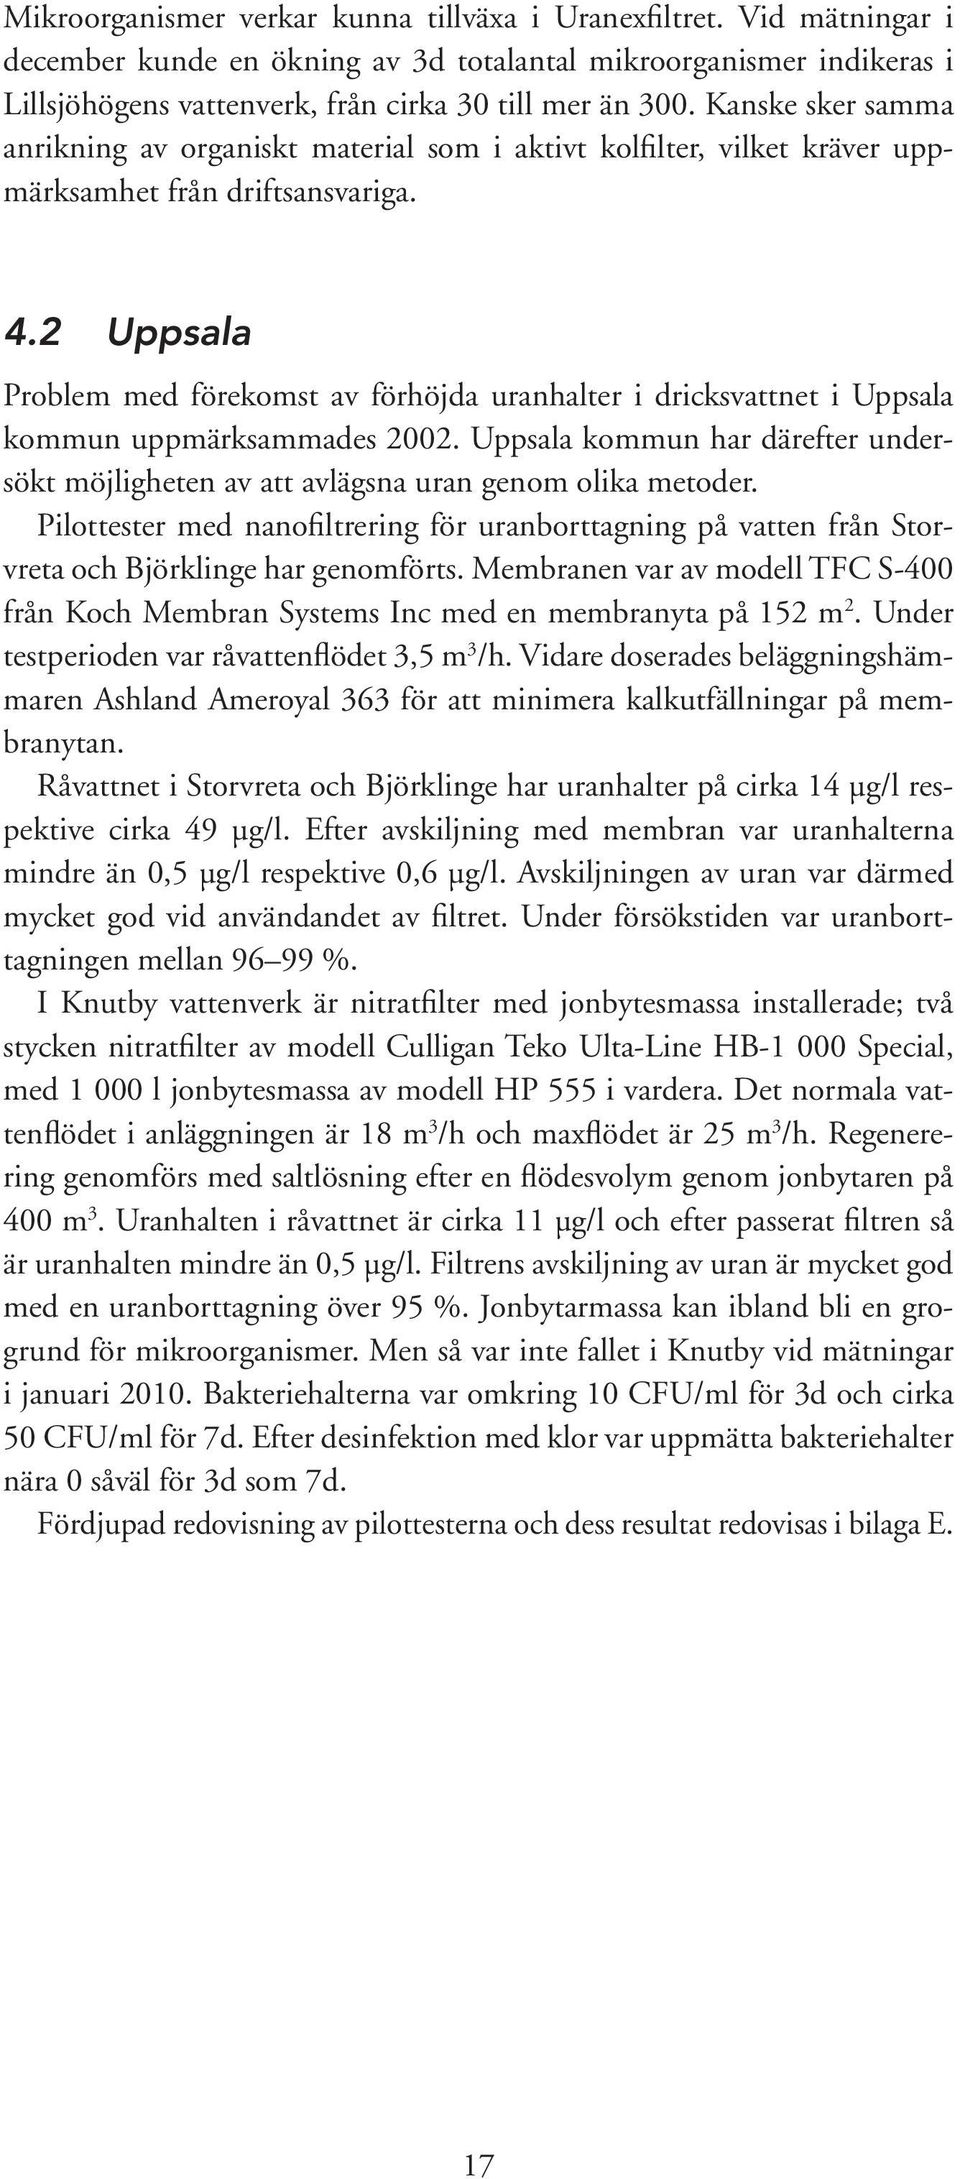 2 Uppsala Problem med förekomst av förhöjda uranhalter i dricksvattnet i Uppsala kommun uppmärksammades 2002.